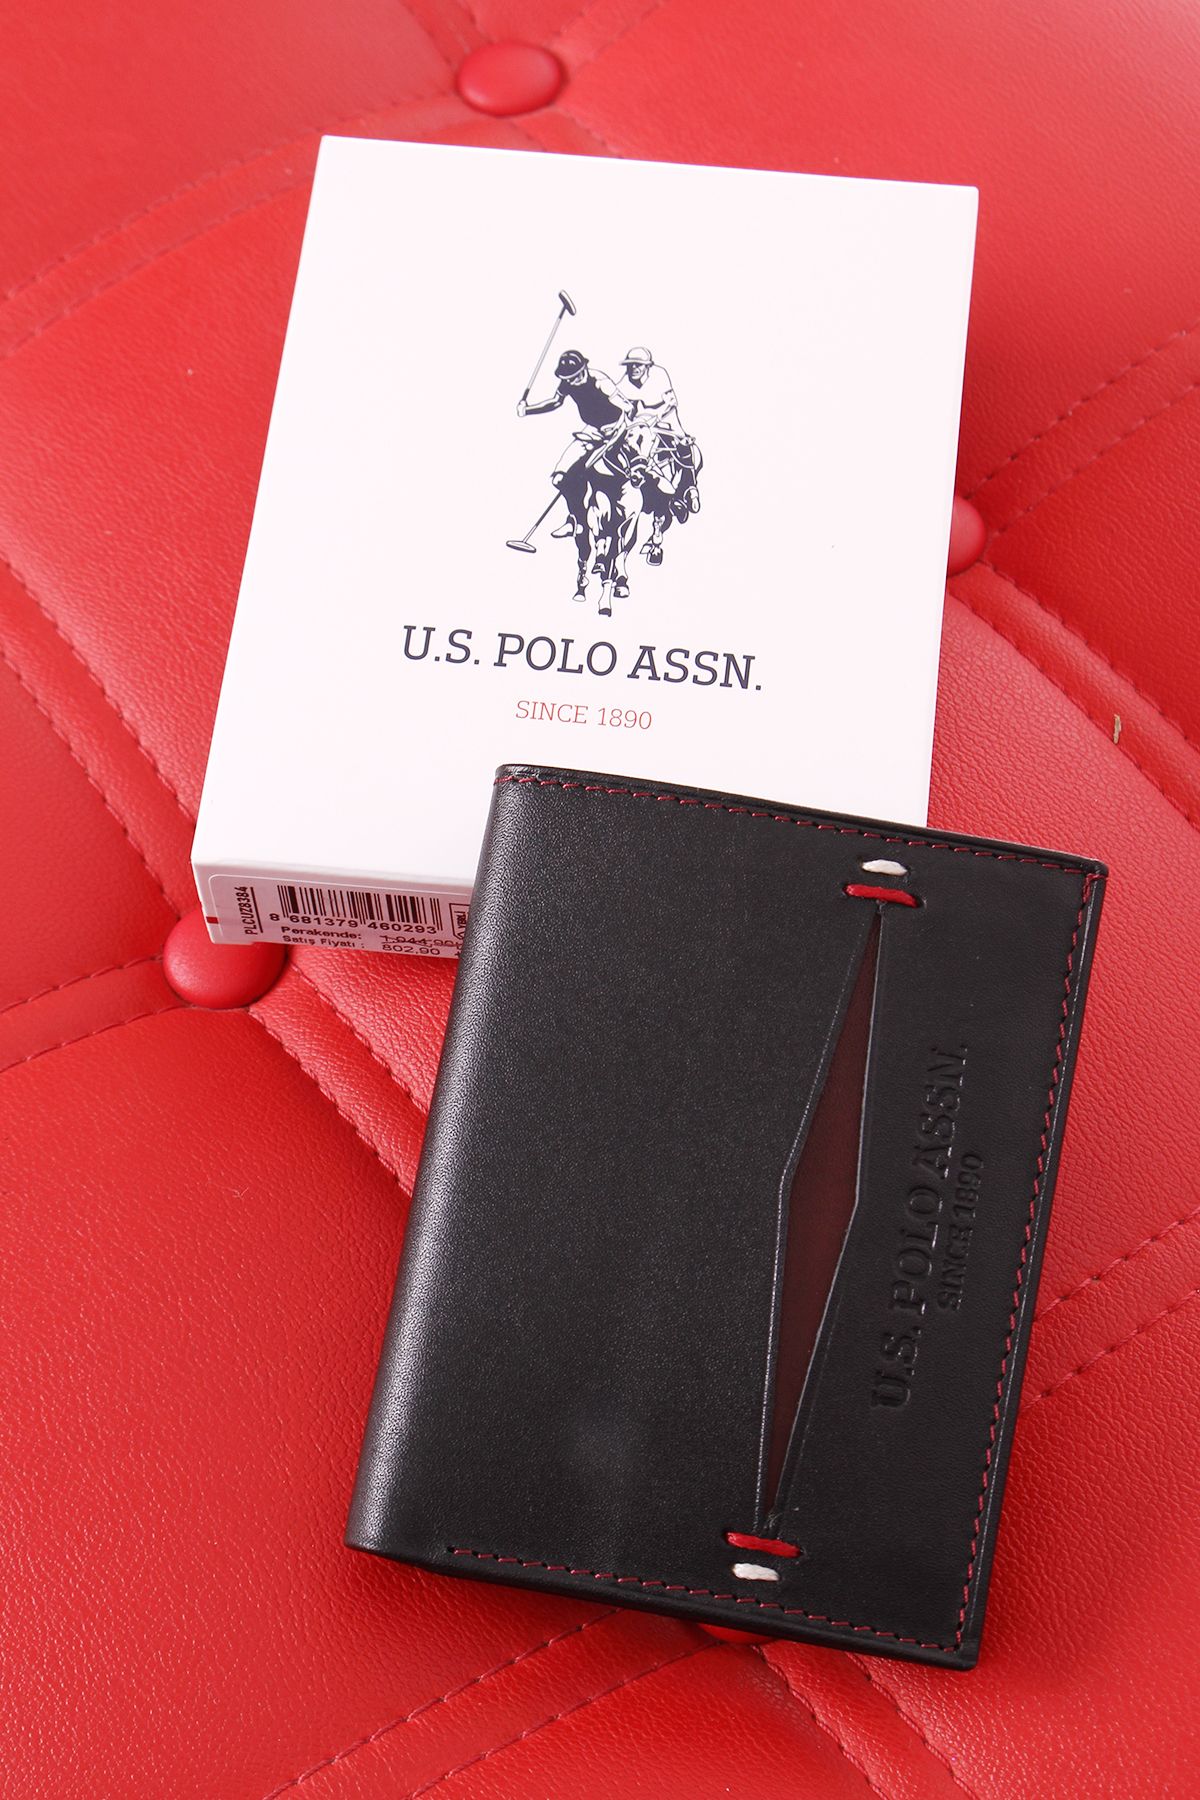 U.S. Polo Assn. U.S. POLO ASSN 8384 HAKİKİ DERİ CÜZDAN KARTLIK SİYAH